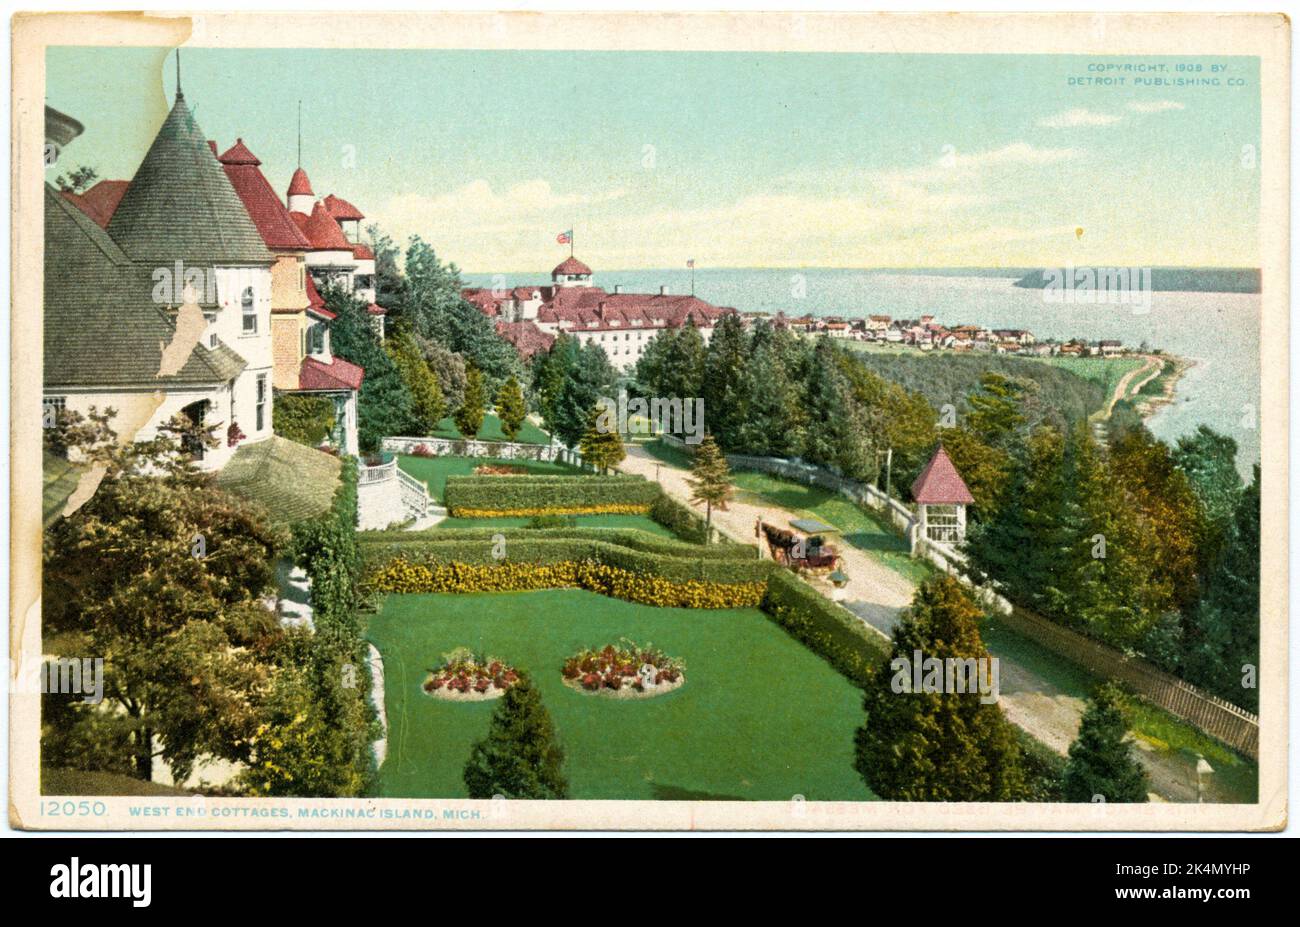 West End Cottages, Mackinac Isl., Michigan Detroit Publishing Company cartes postales série 12000. Date de publication: 1898 - 1931 lieu: Detroit Éditeur: Detroit Banque D'Images